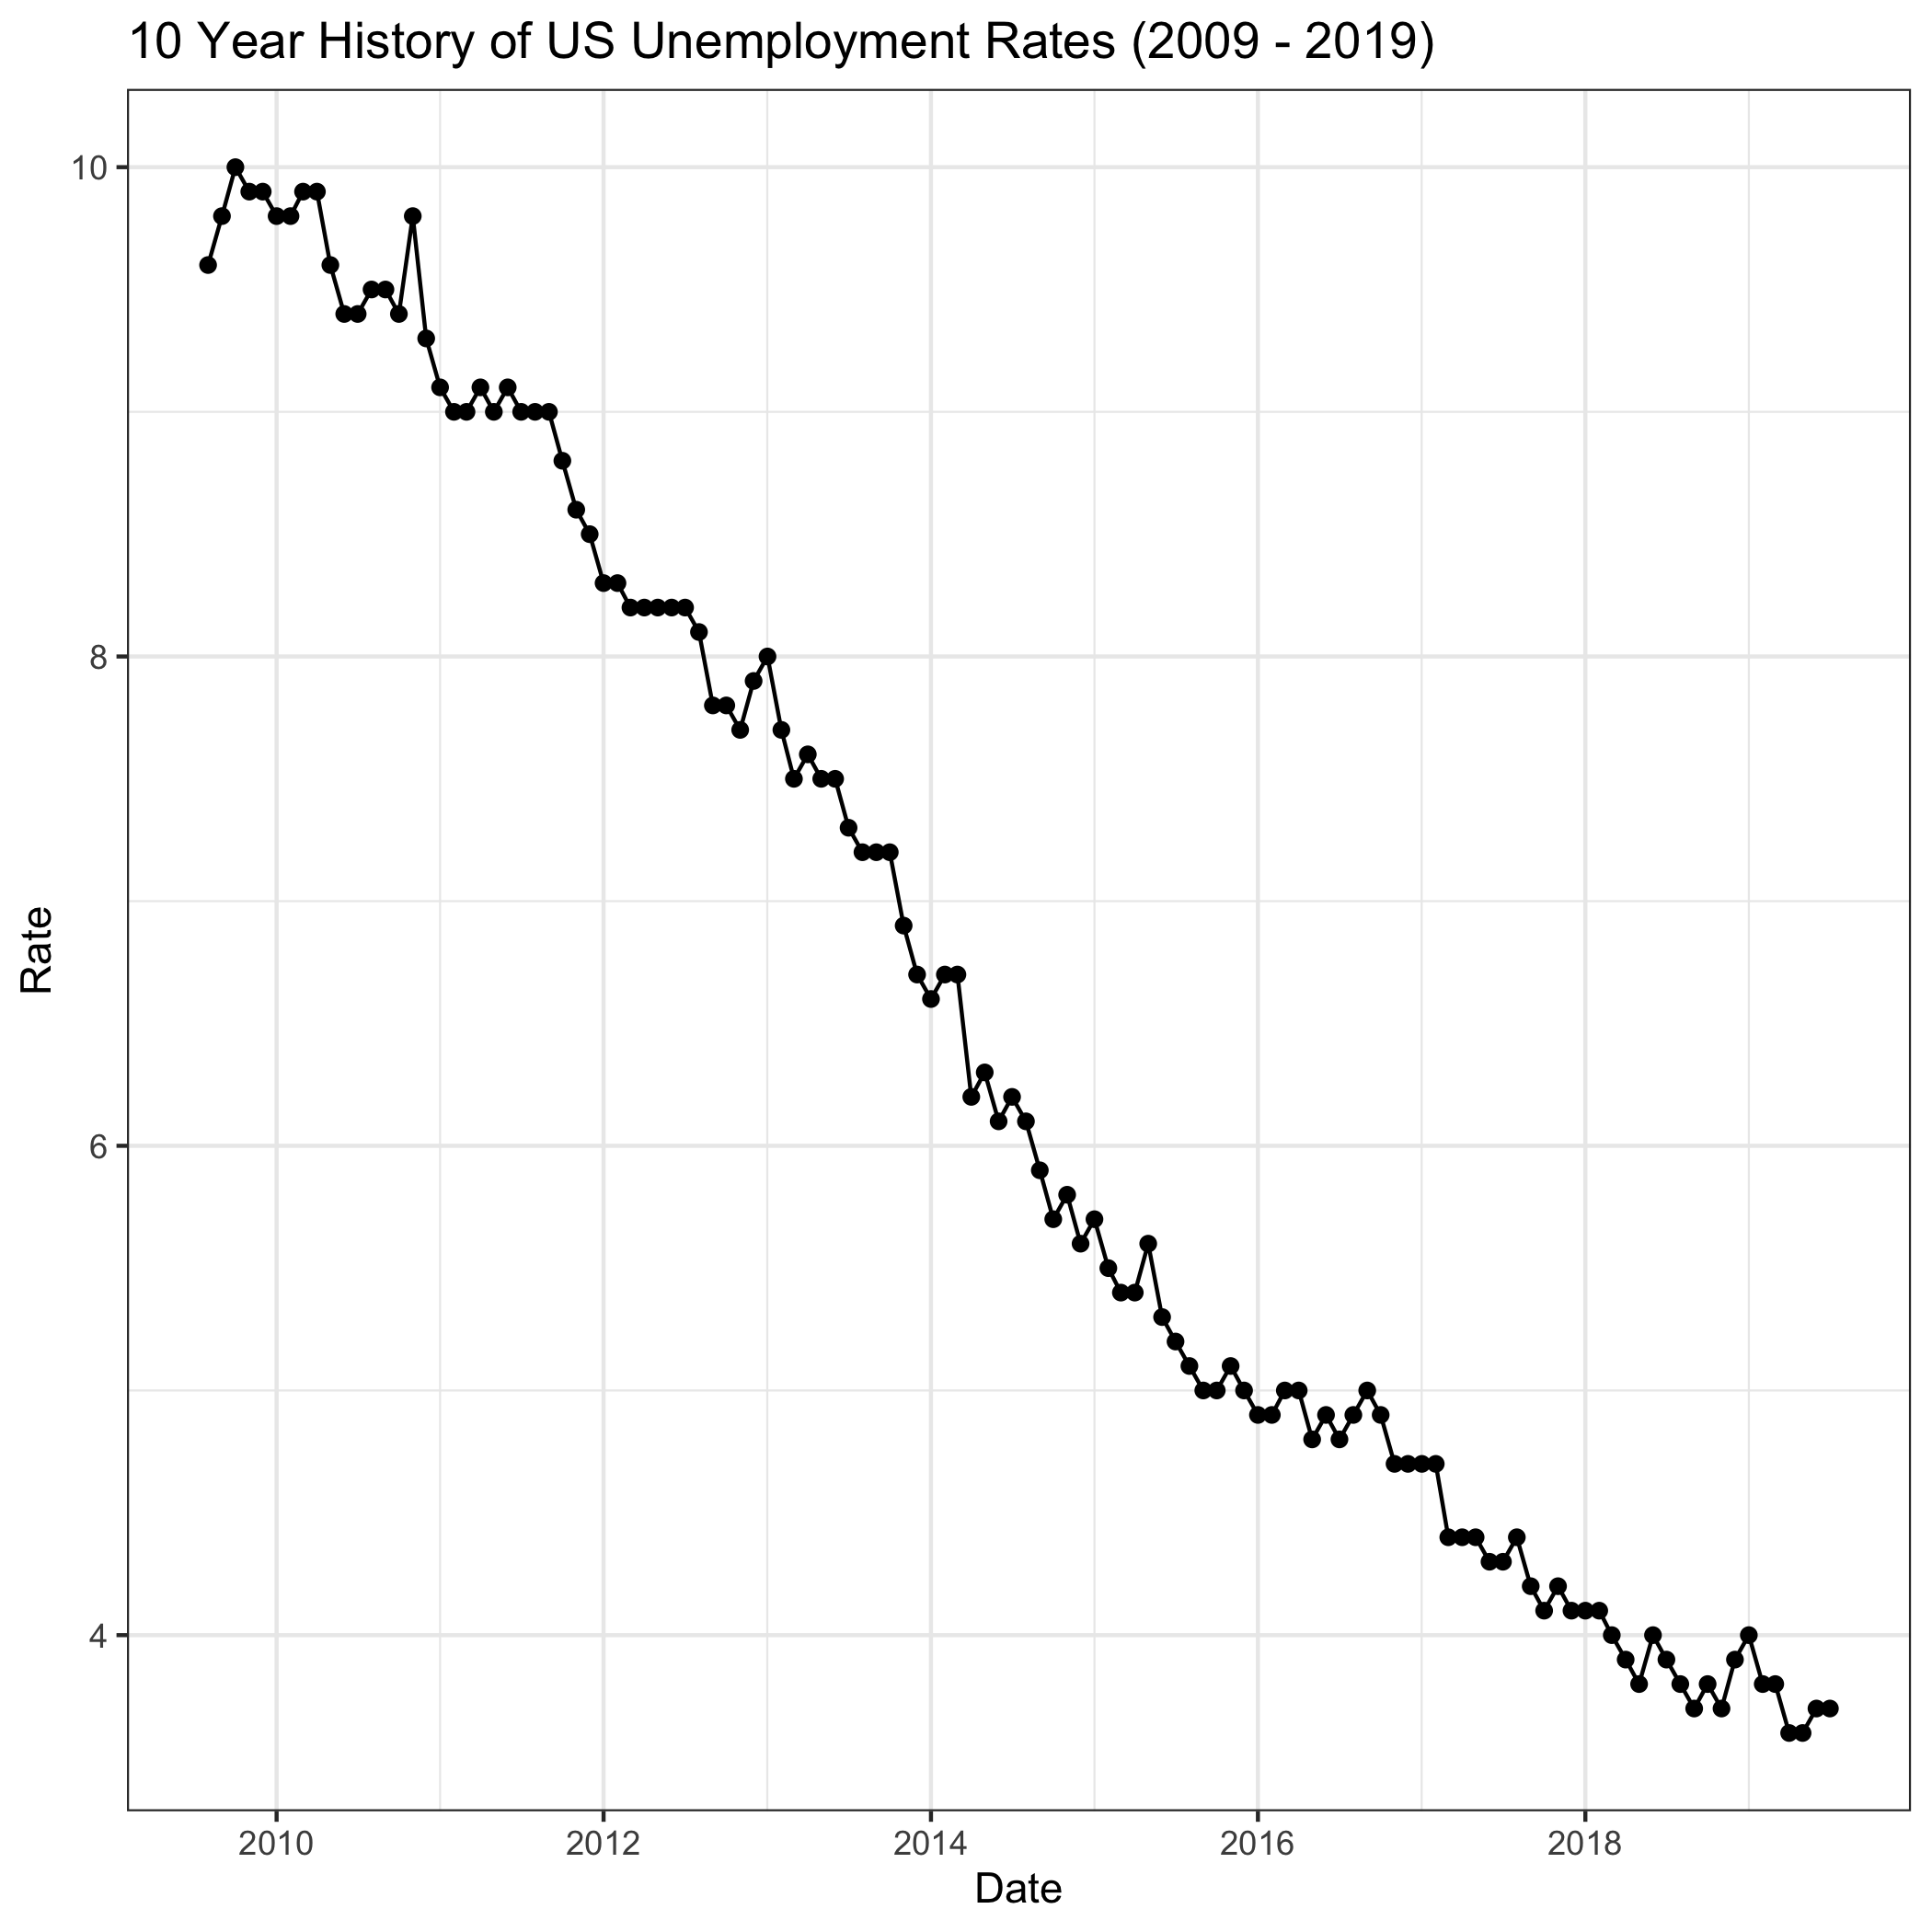 Showing US unemployment rates